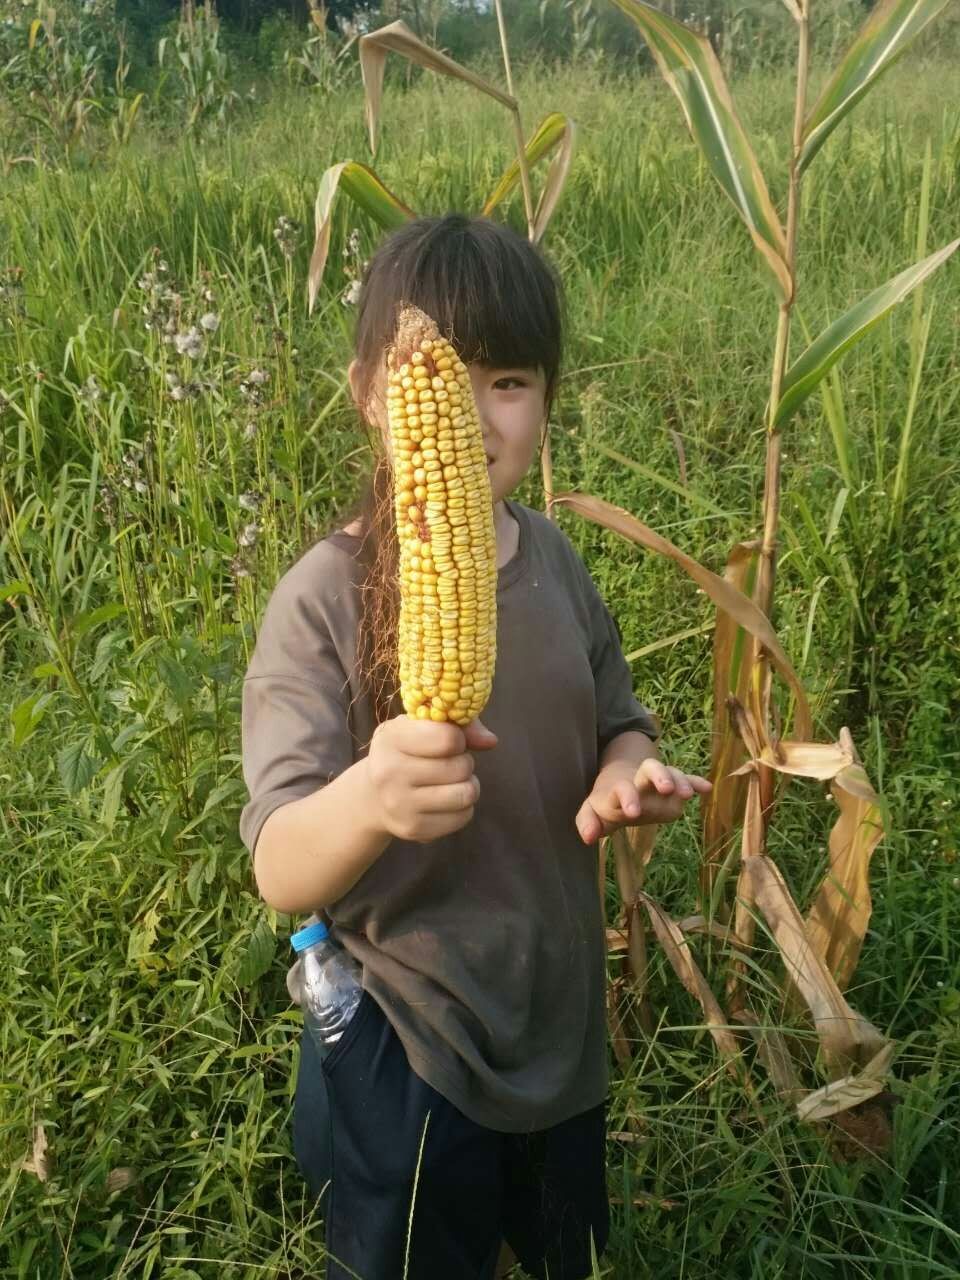 女孩儿说,老师我要把我收获的最大的玉米送给我妈妈.